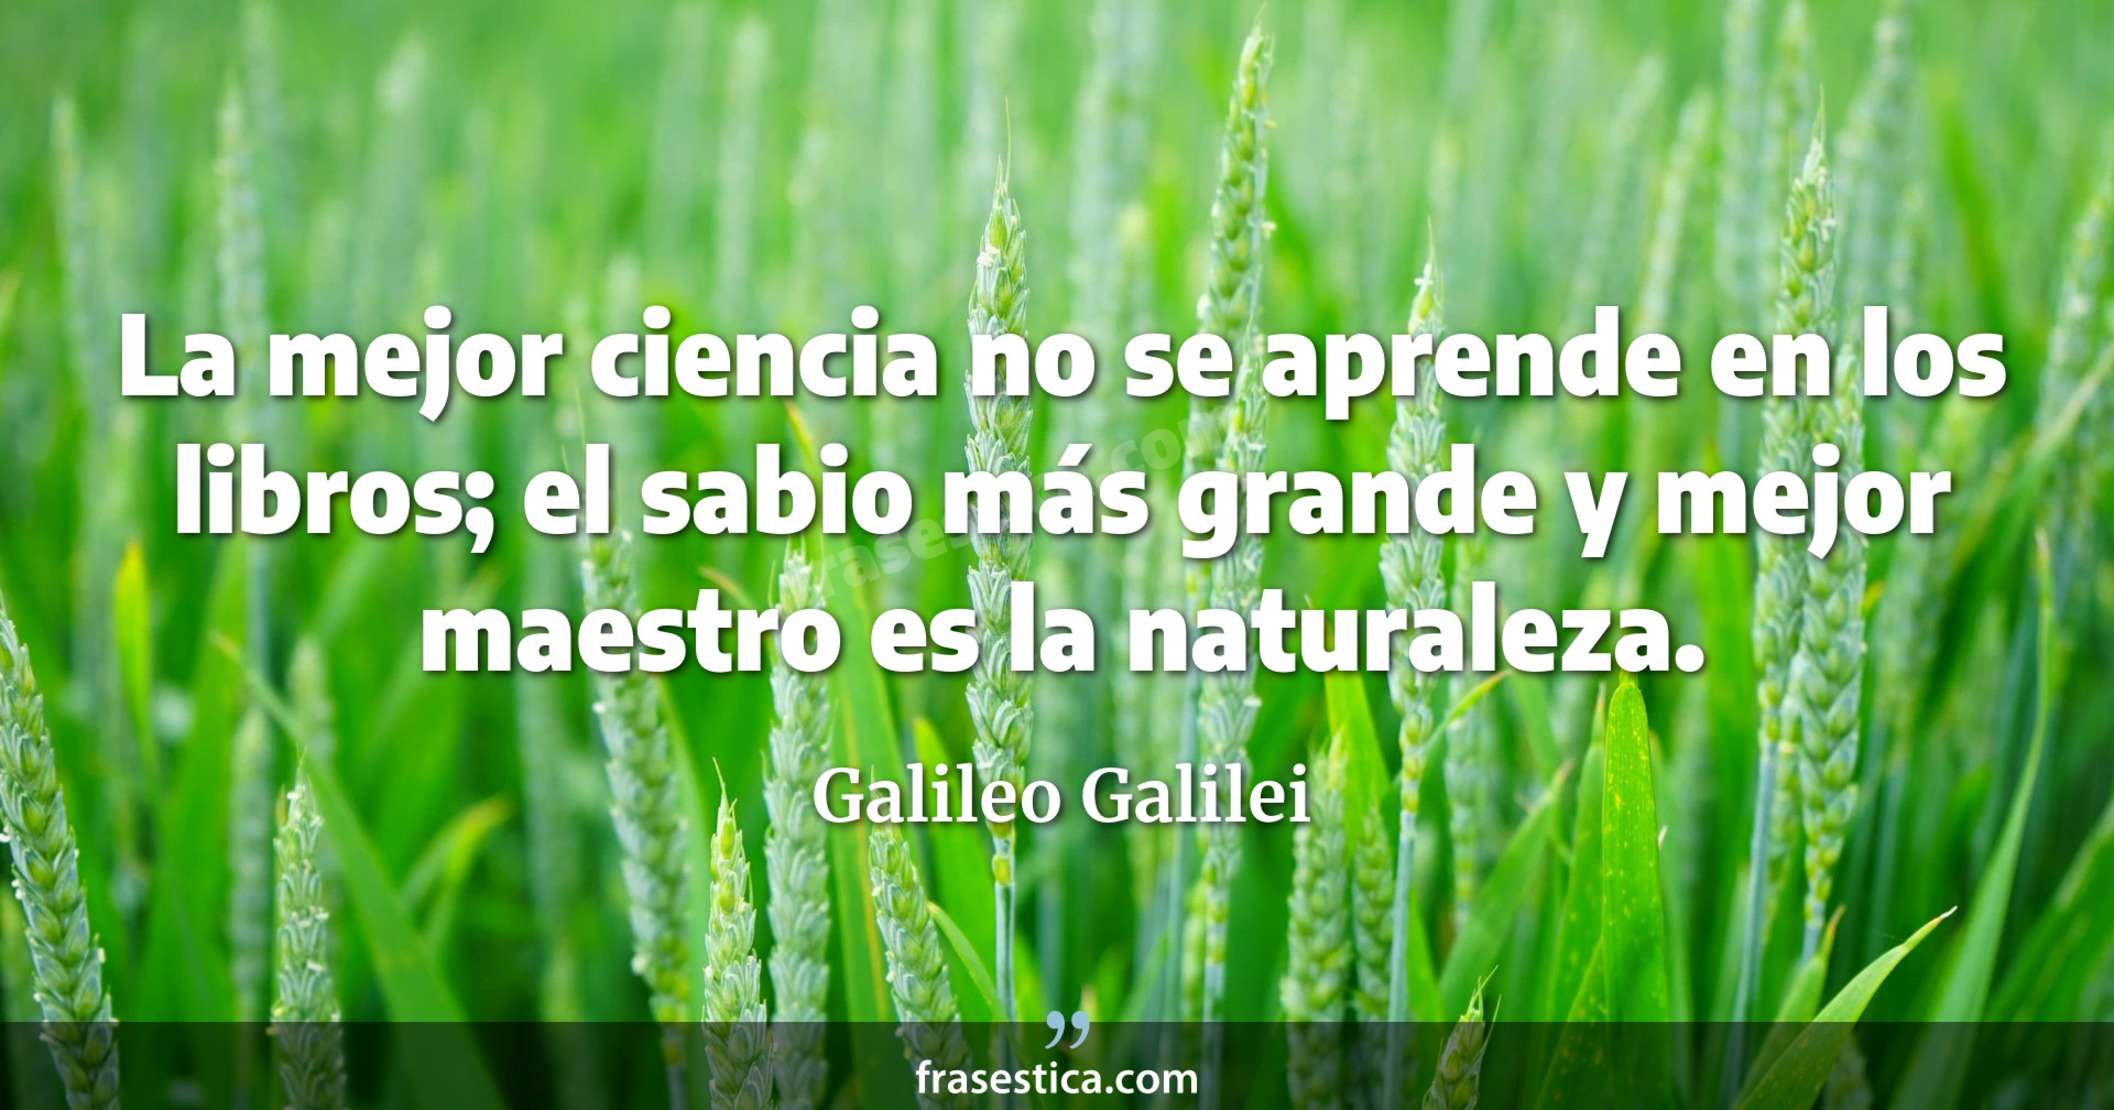 La mejor ciencia no se aprende en los libros; el sabio más grande y mejor maestro es la naturaleza. - Galileo Galilei